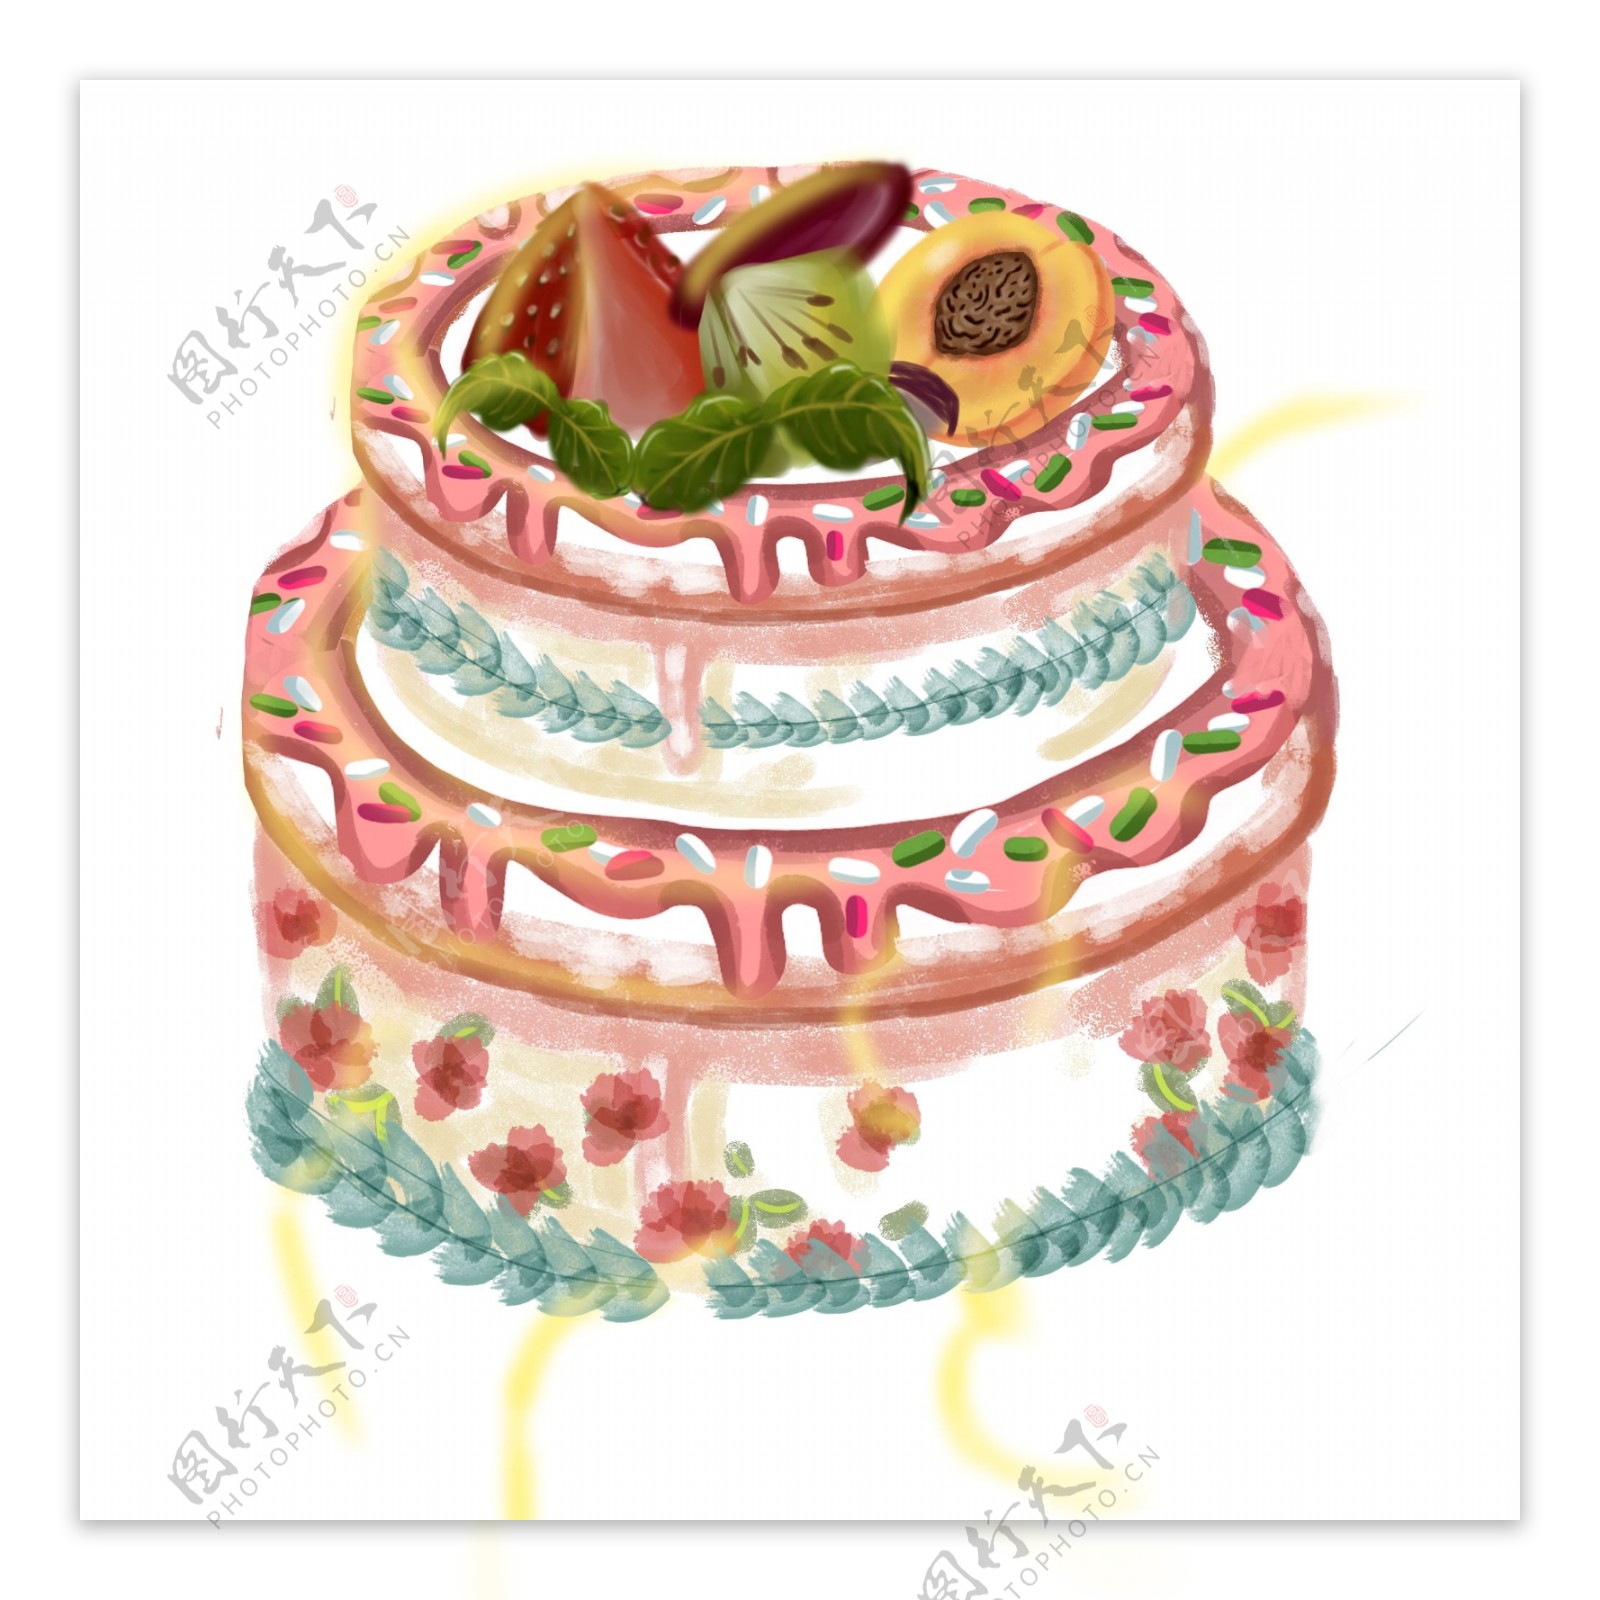 美味水果蛋糕手绘食物设计